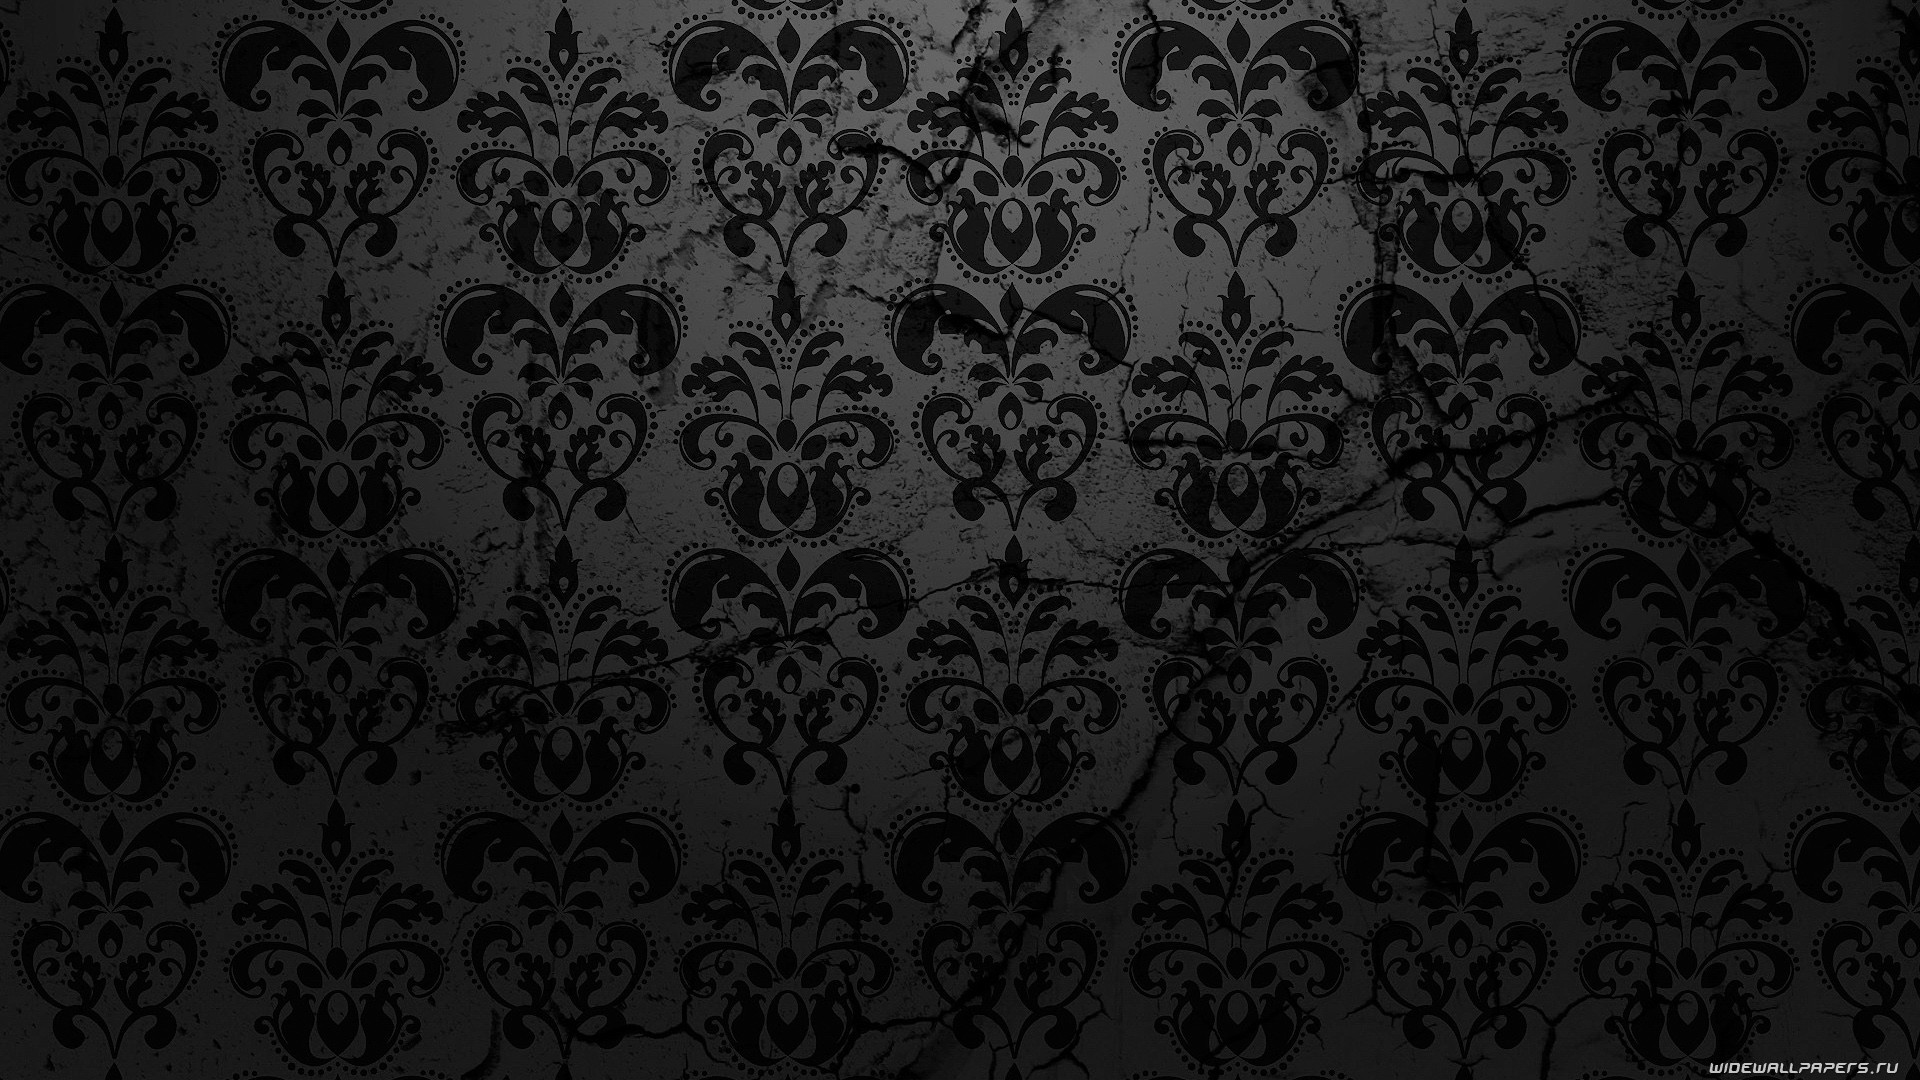 1920x1080 Ornate Black Lace Desktop Wallpaper #15193 Wallpaper | Viewallpaper .